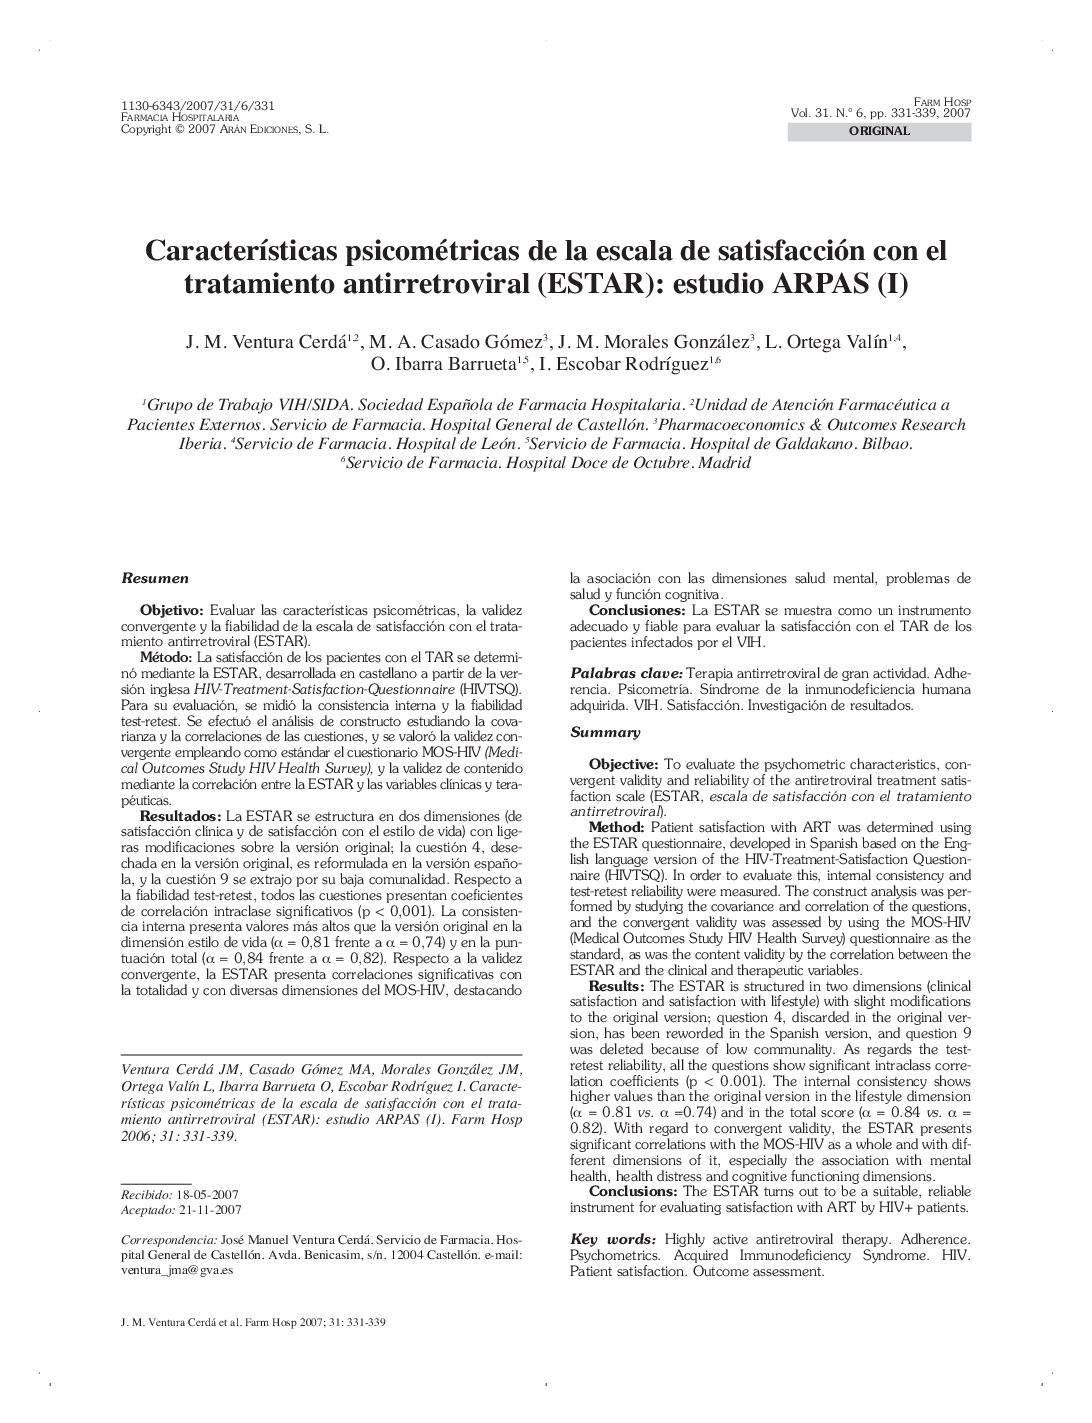 CaracterÃ­sticas psicométricas de la escala de satisfacción con el tratamiento antirretroviral (ESTAR): estudio ARPAS (I)